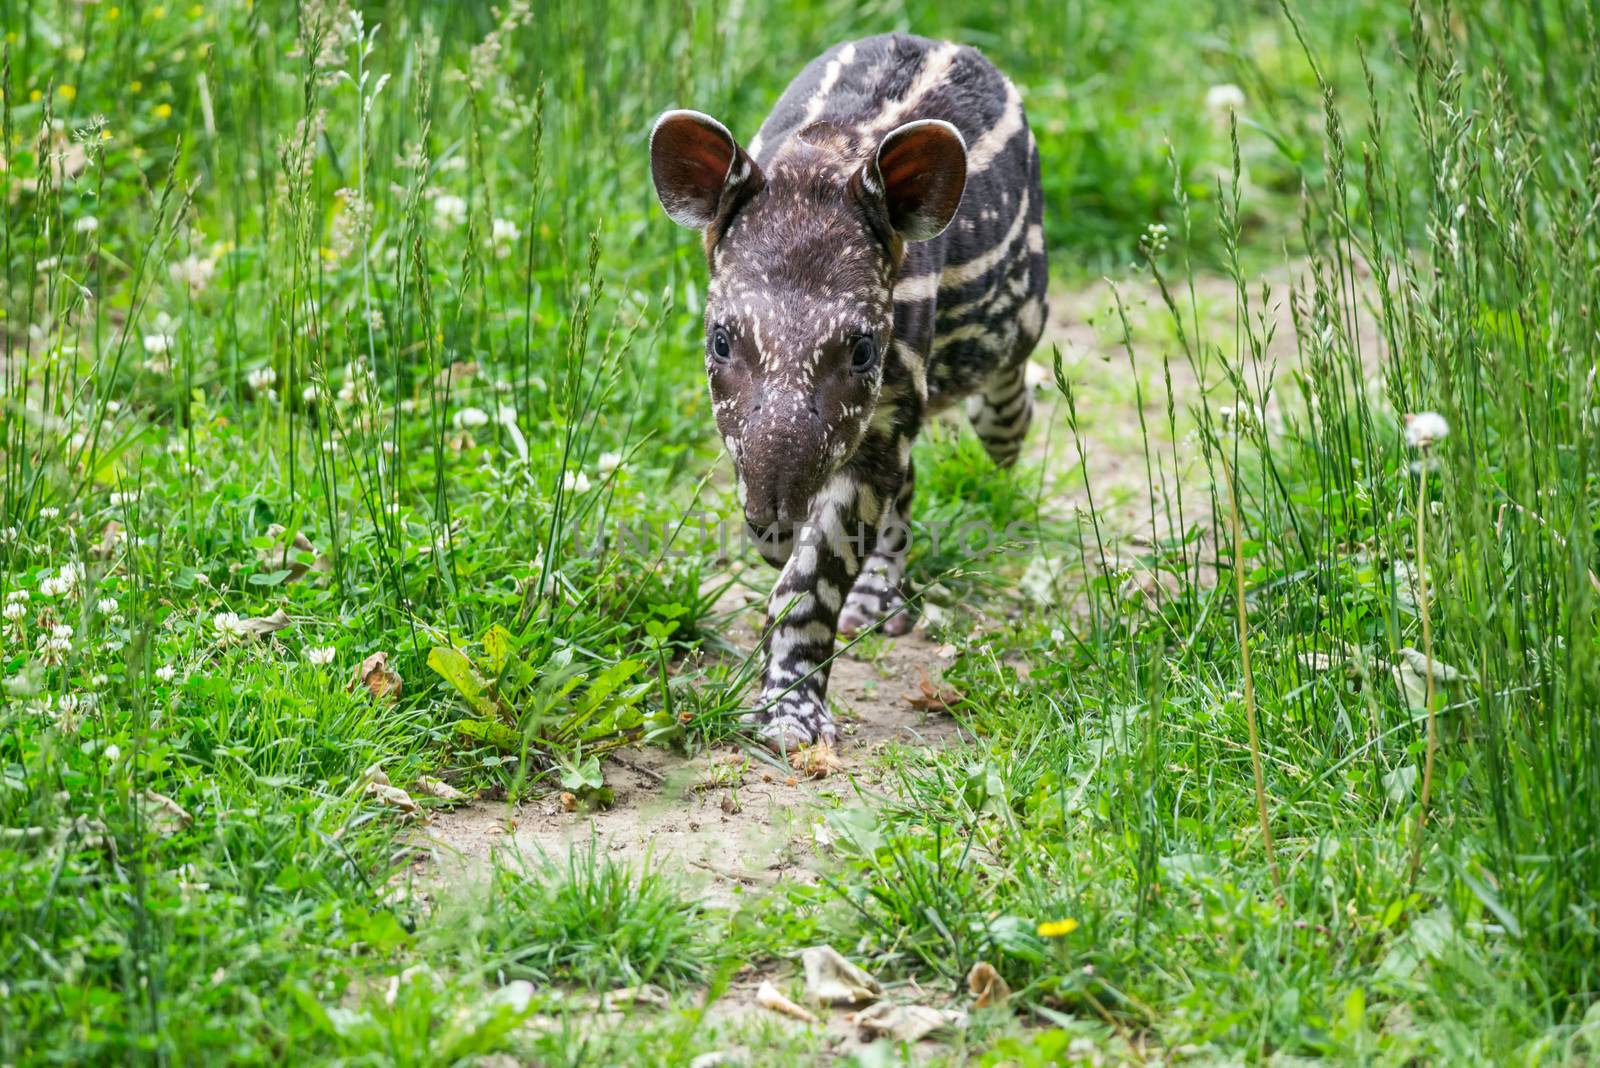 Nine days old baby of the endangered South American tapir, also called Brazilian tapir or lowland tapir